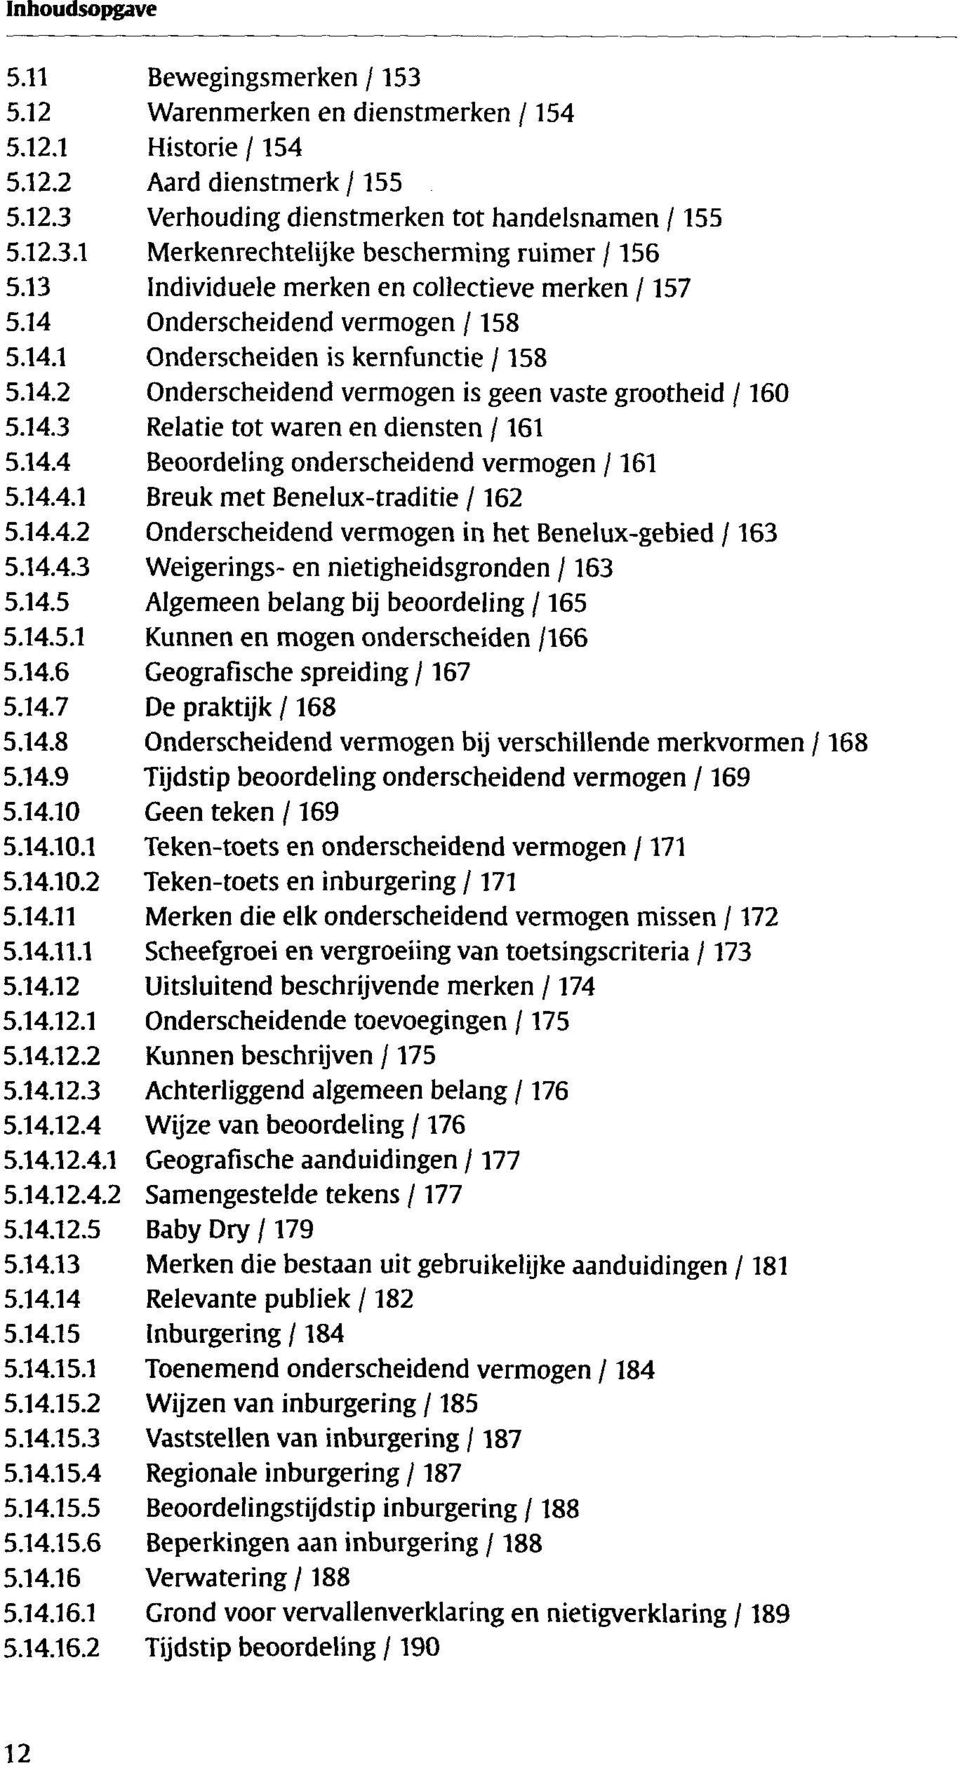 14.4 Beoordeling onderscheidend vermogen /161 5.14.4.1 Breuk met Benelux-traditie /162 5.14.4.2 Onderscheidend vermogen in het Benelux-gebied /163 5.14.4.3 Weigerings- en nietigheidsgronden /163 5.14.5 Algemeen belang bij beoordeling /165 5.